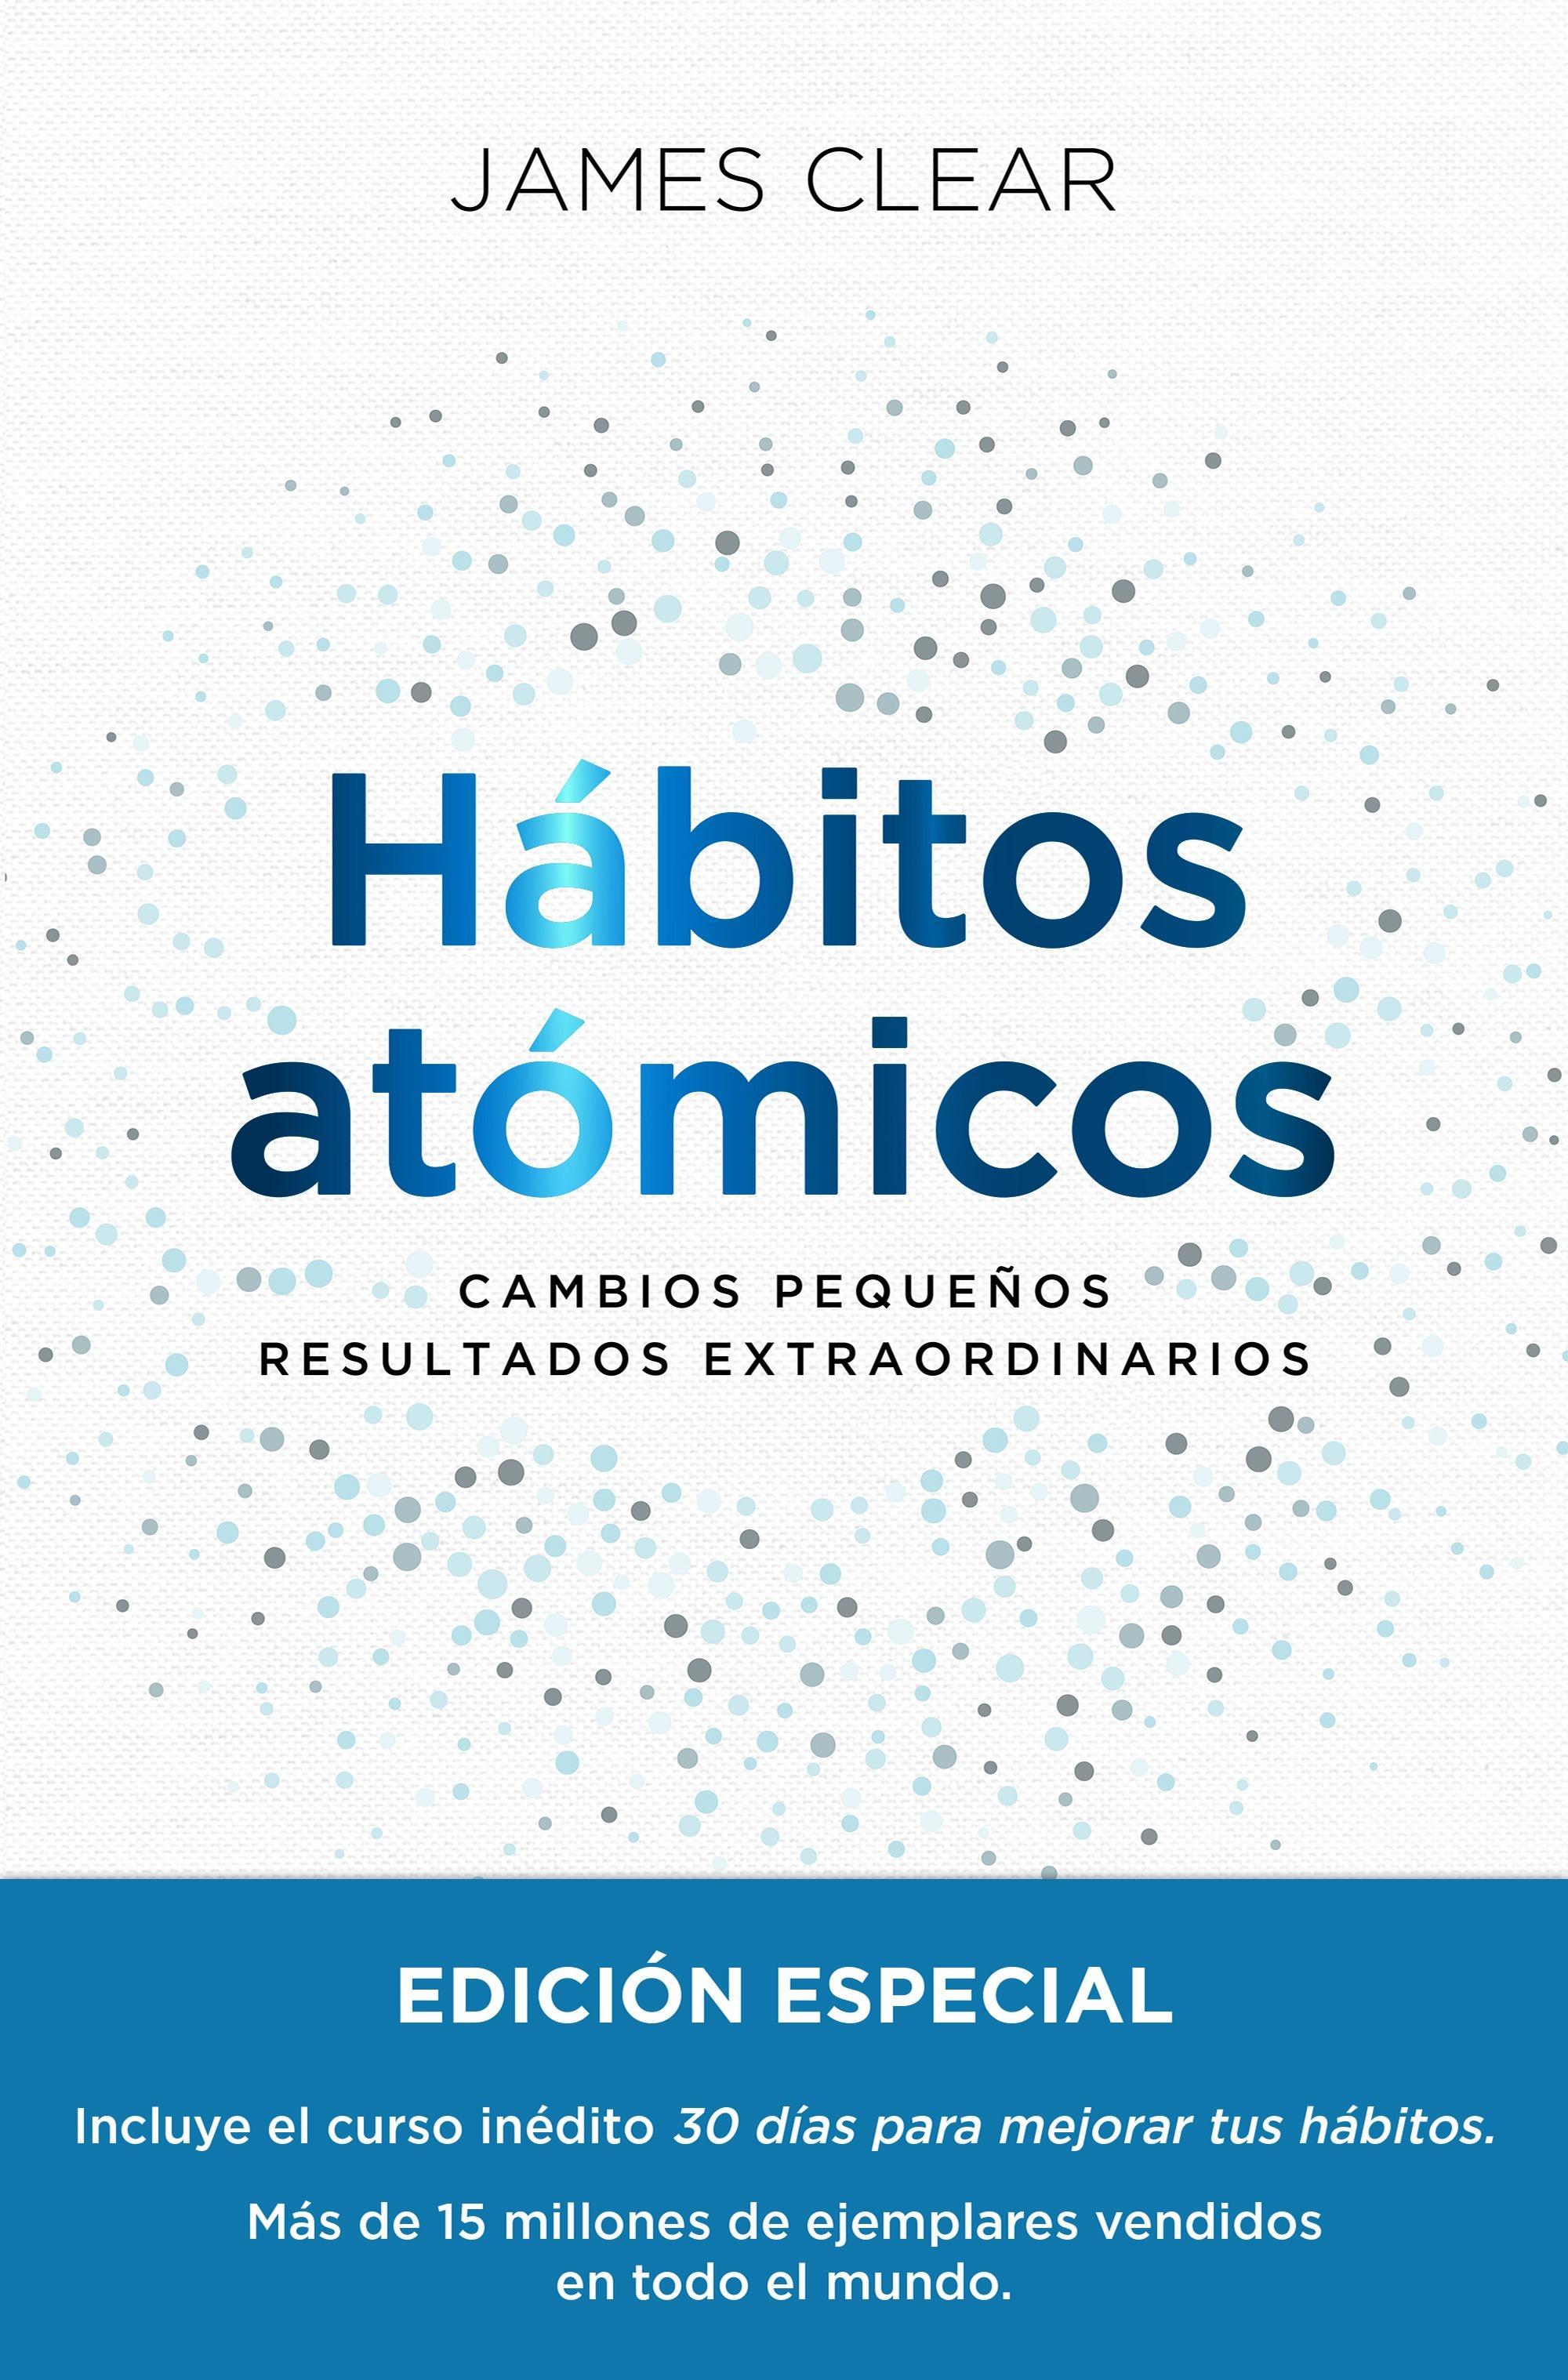 Hábitos Atómicos. Edición Especial Tapa Dura. 